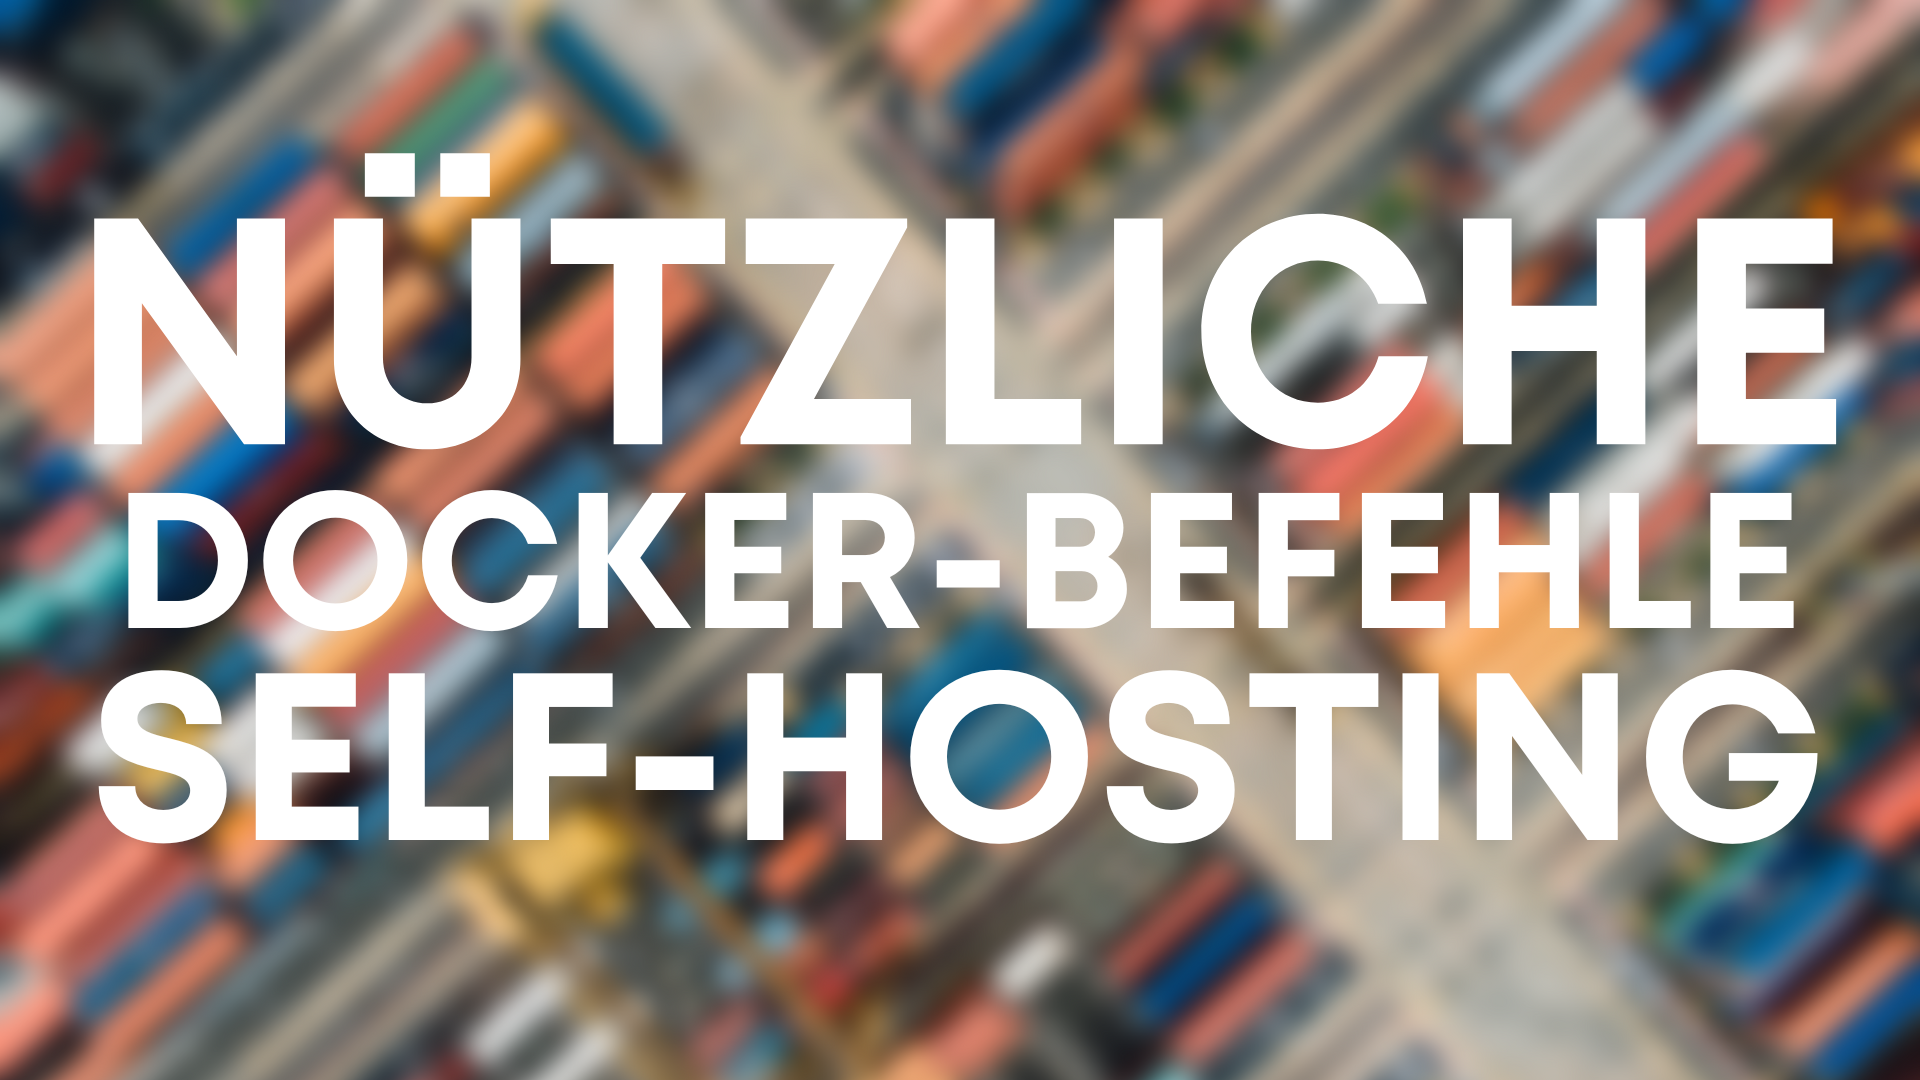 Nützliche Docker-Befehle für das Self-Hosting